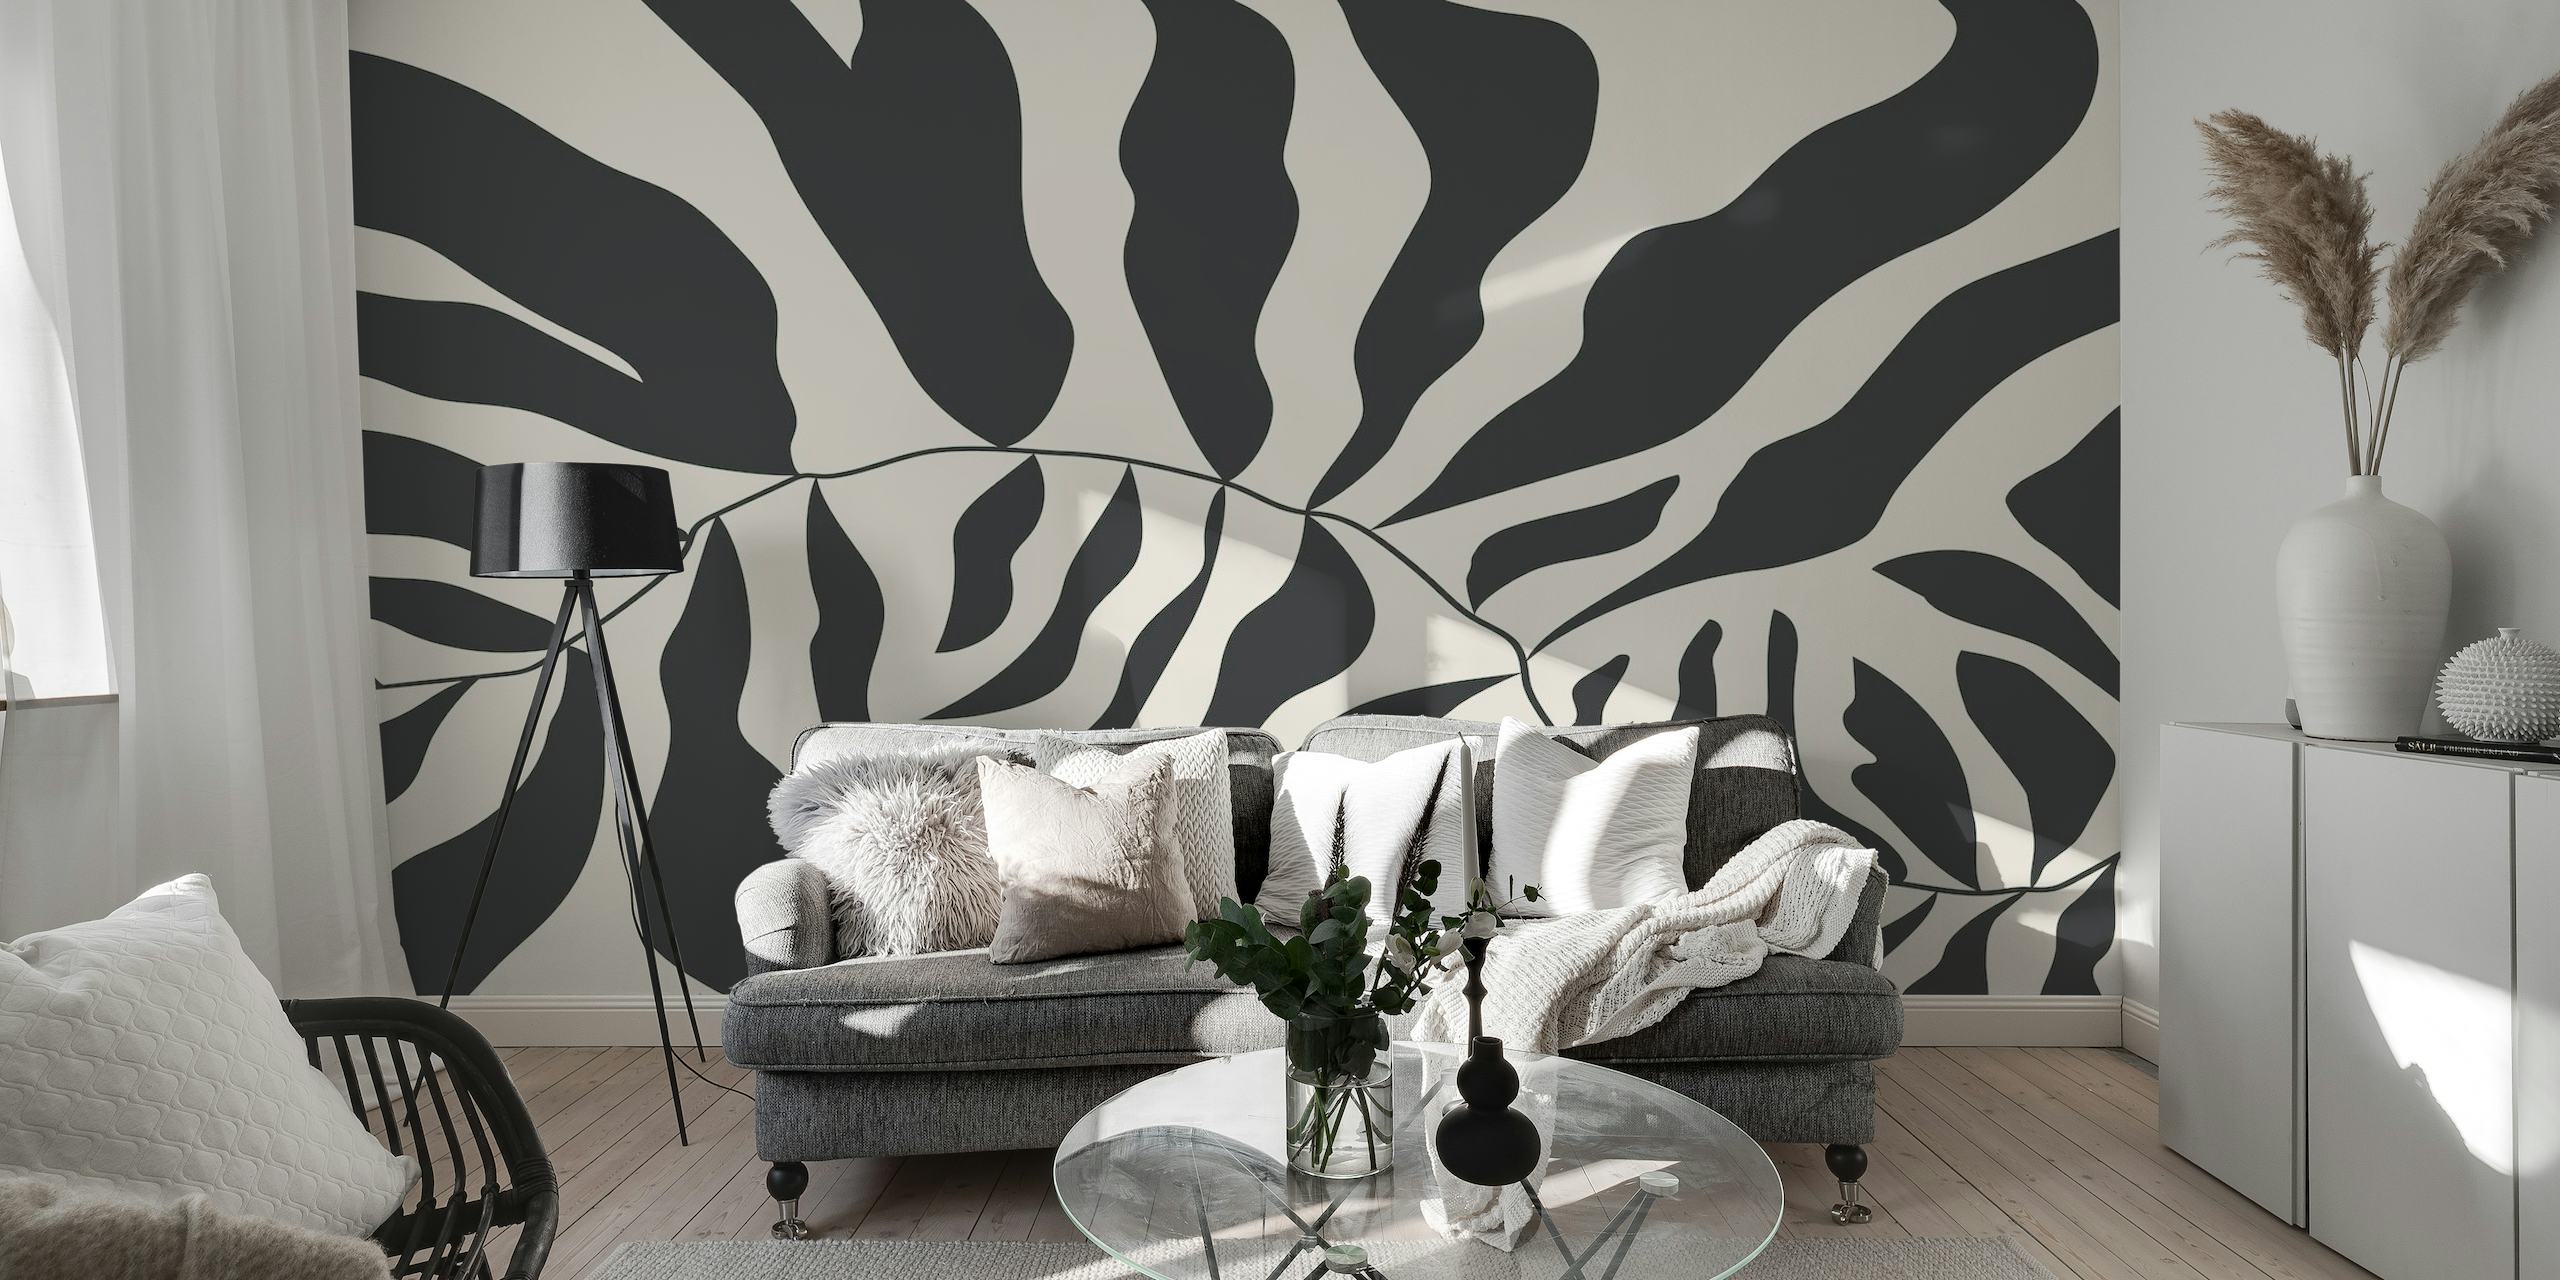 Zwart-wit abstracte Matisse-stijl muurschildering met organische vormen